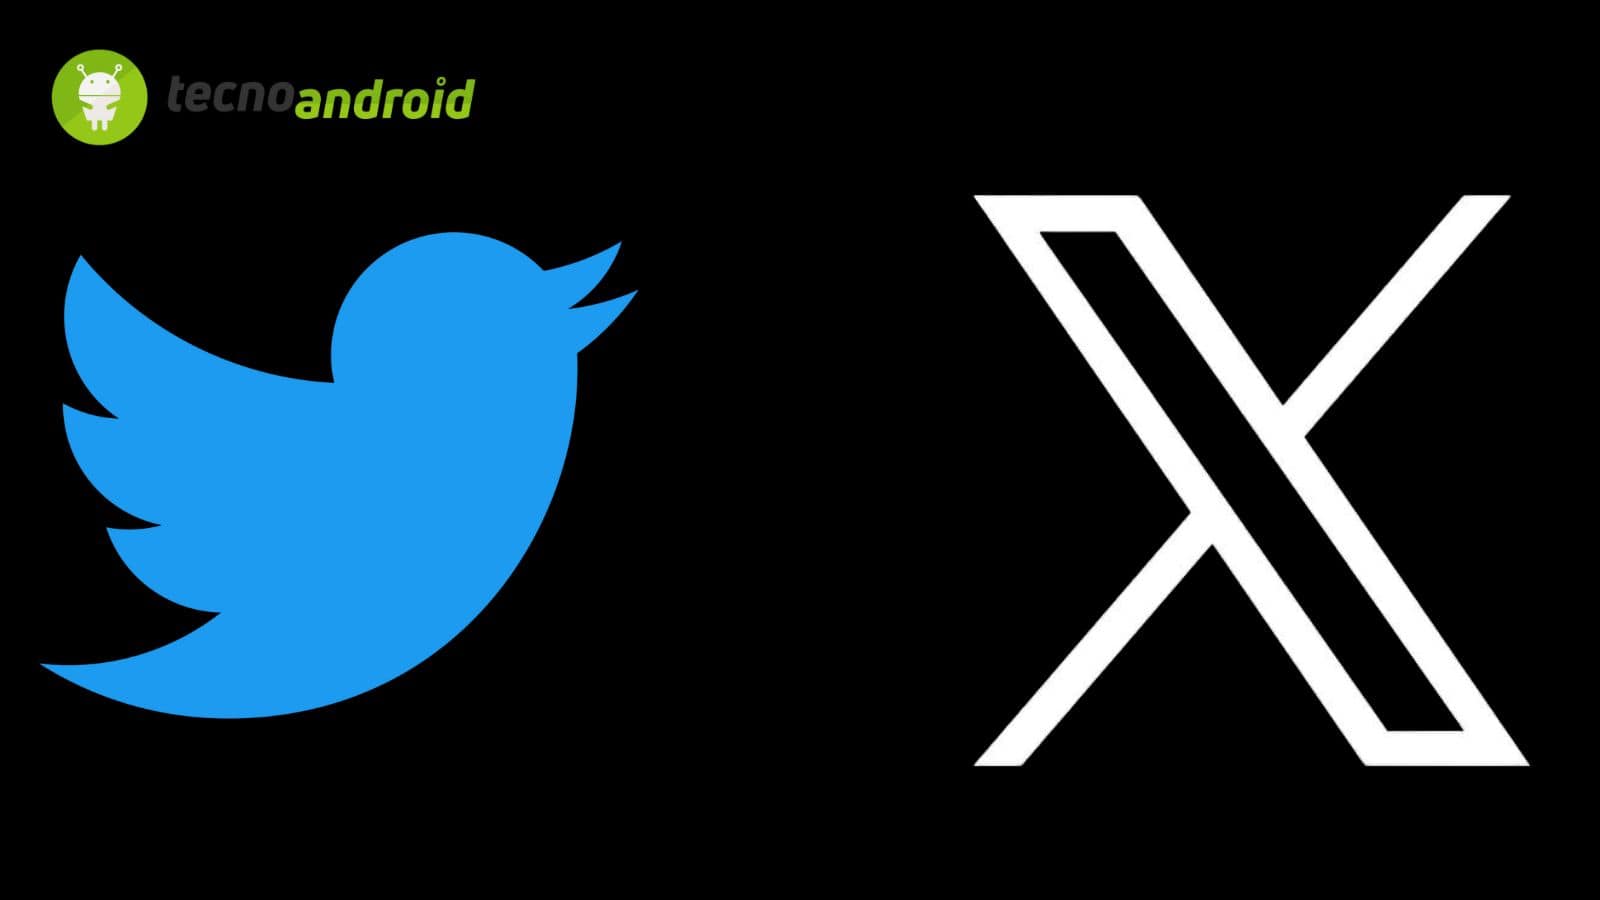 Twitter/X: utenti confusi dalla sostituzione automatica 